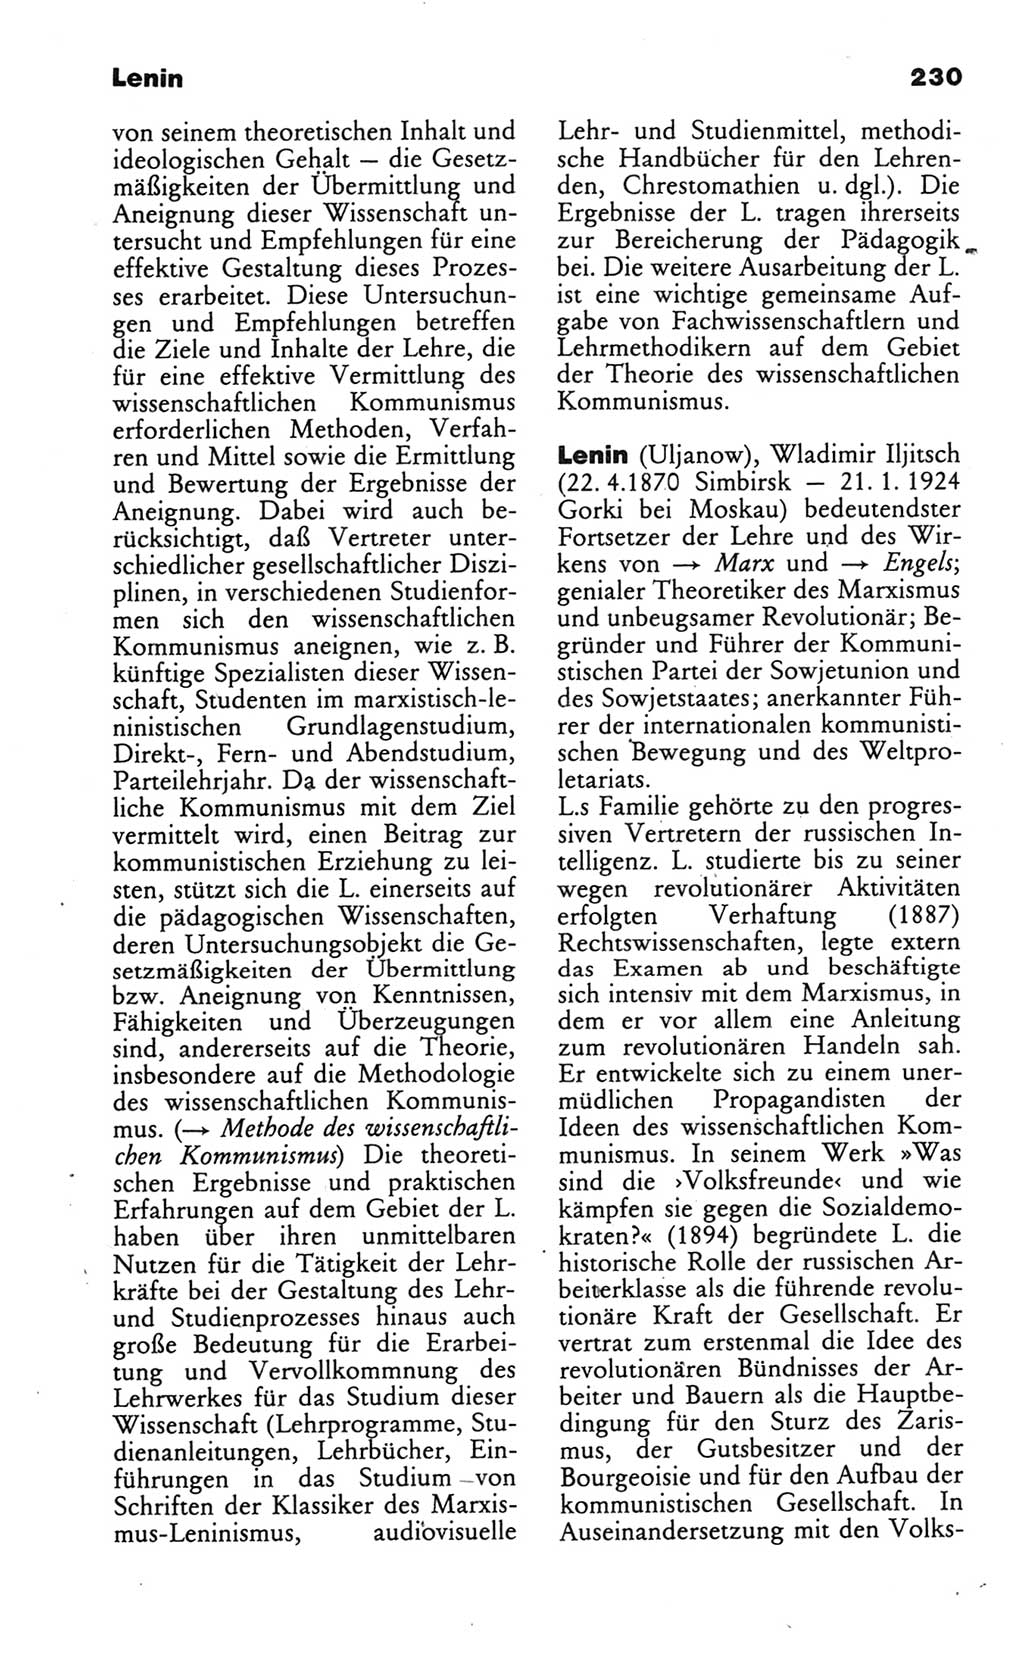 Wörterbuch des wissenschaftlichen Kommunismus [Deutsche Demokratische Republik (DDR)] 1986, Seite 230 (Wb. wiss. Komm. DDR 1986, S. 230)